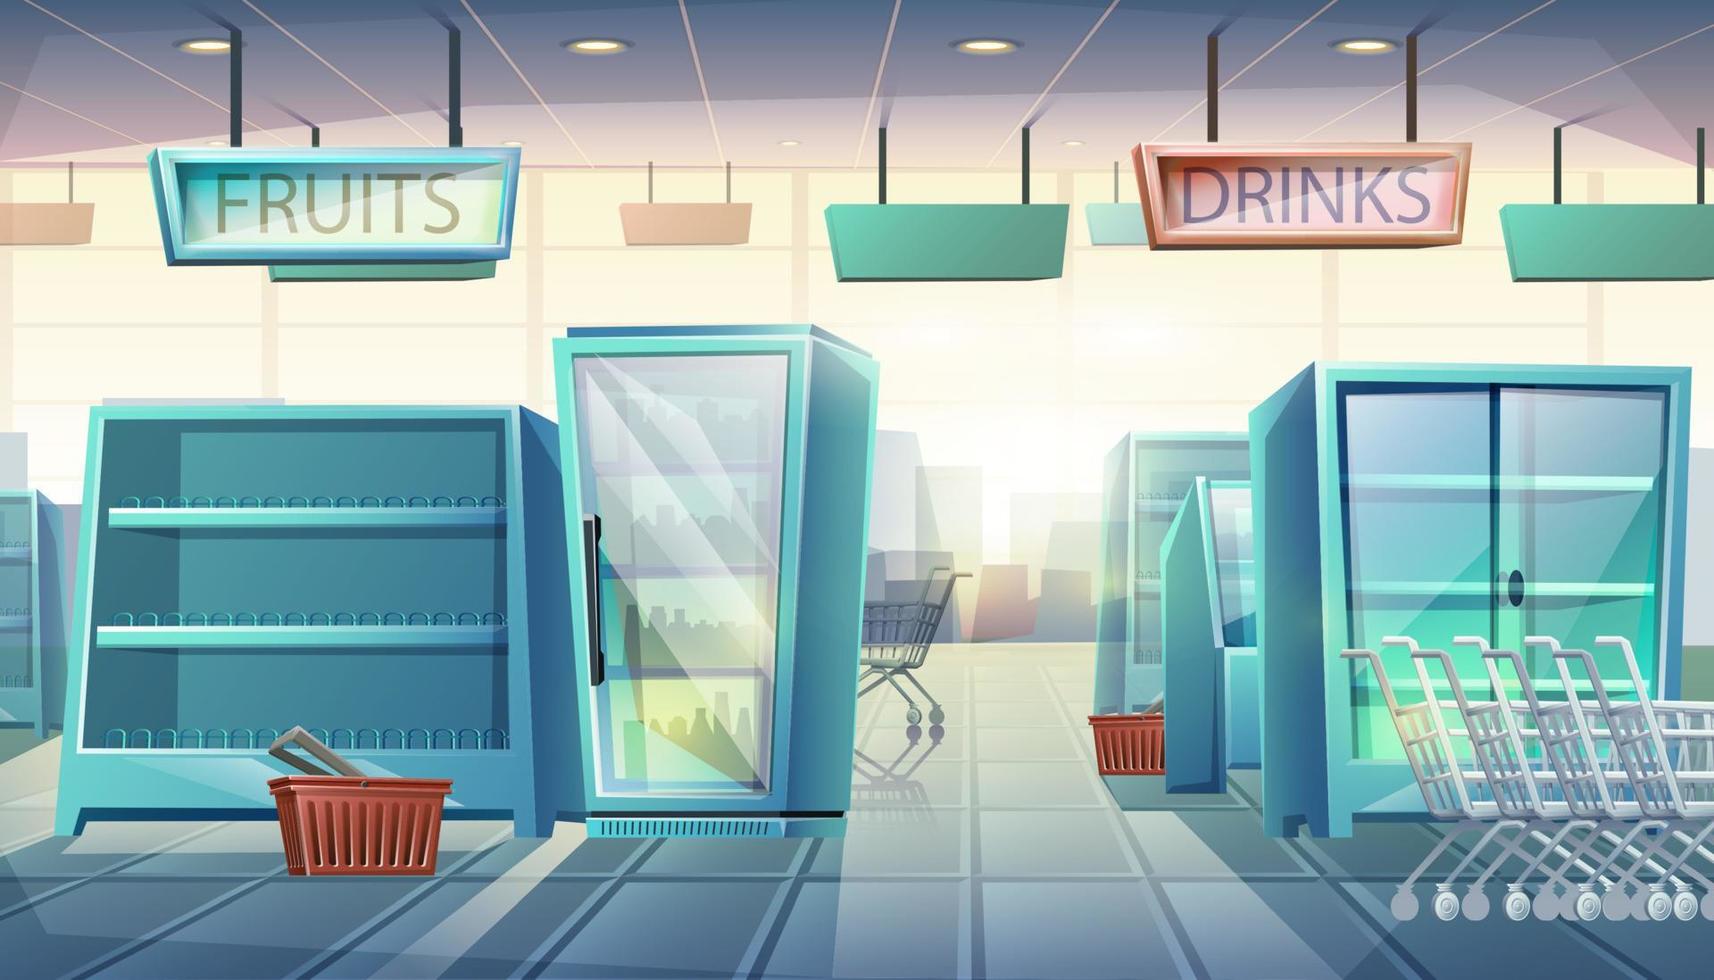 supermercato piatto in stile cartone animato vettoriale con distributori automatici, scaffali con cibo e bevande, carrello e cestino.